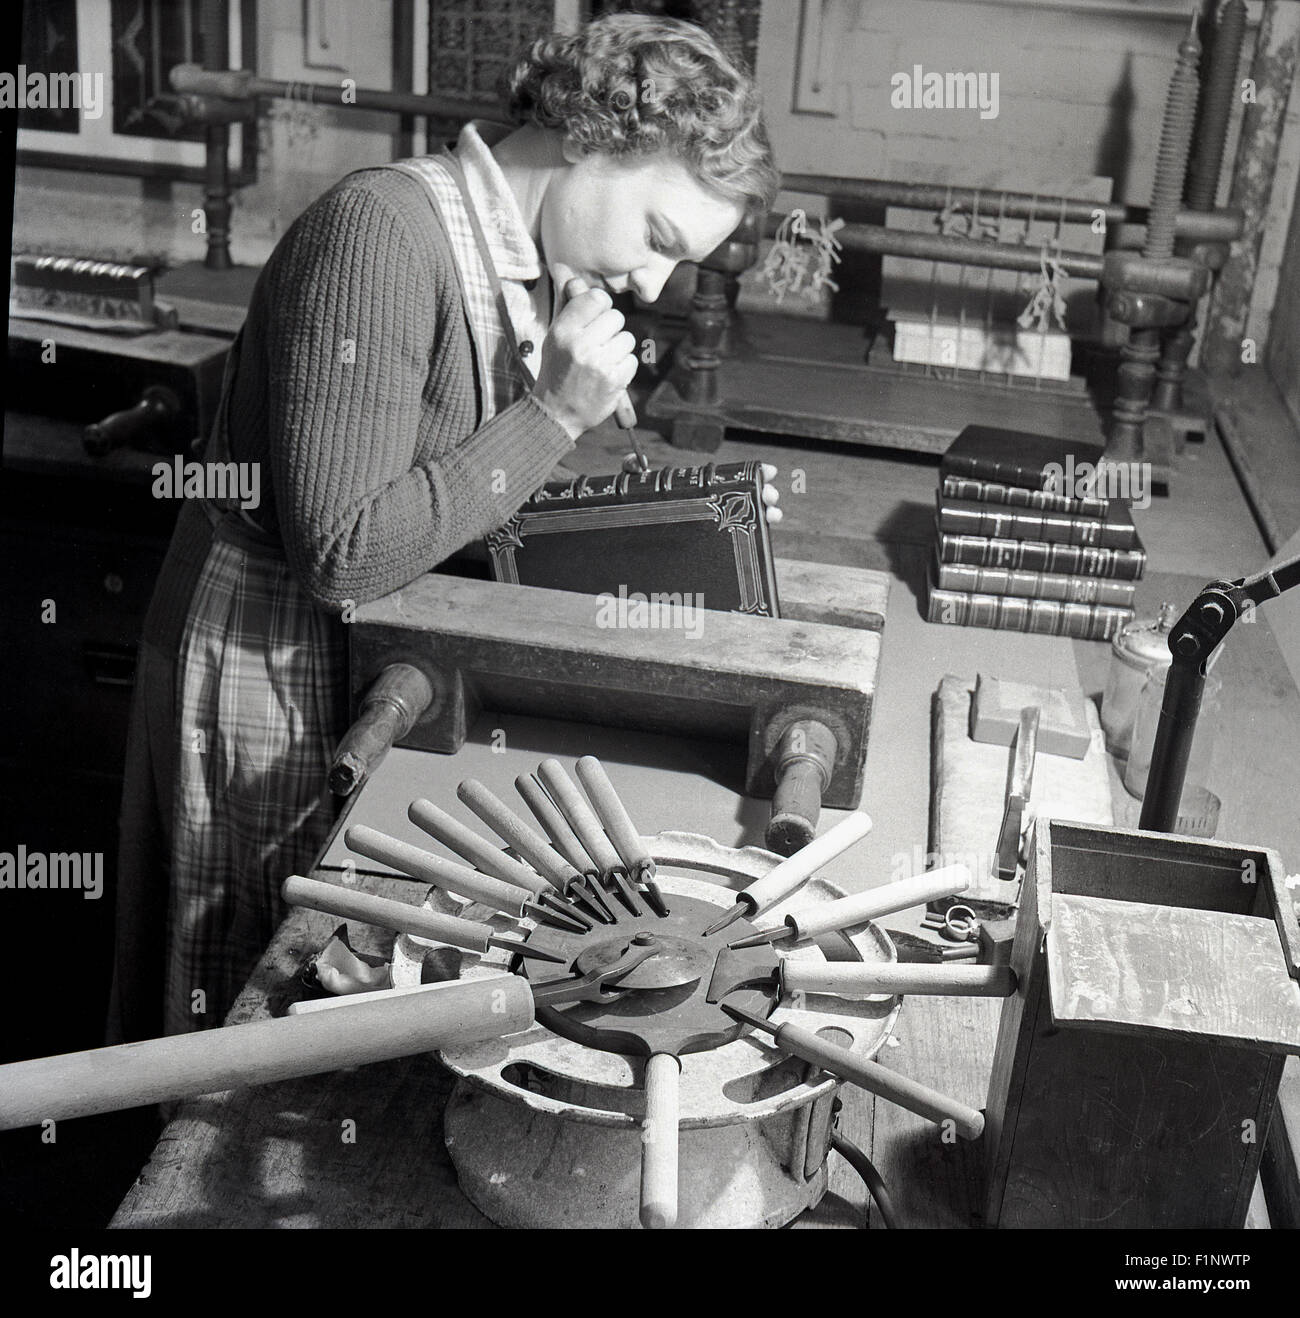 Storico degli anni cinquanta, lady in laboratorio utilizzando i metodi e gli strumenti tradizionali per tagliare , etch o incidere il dorso di un libro Foto Stock